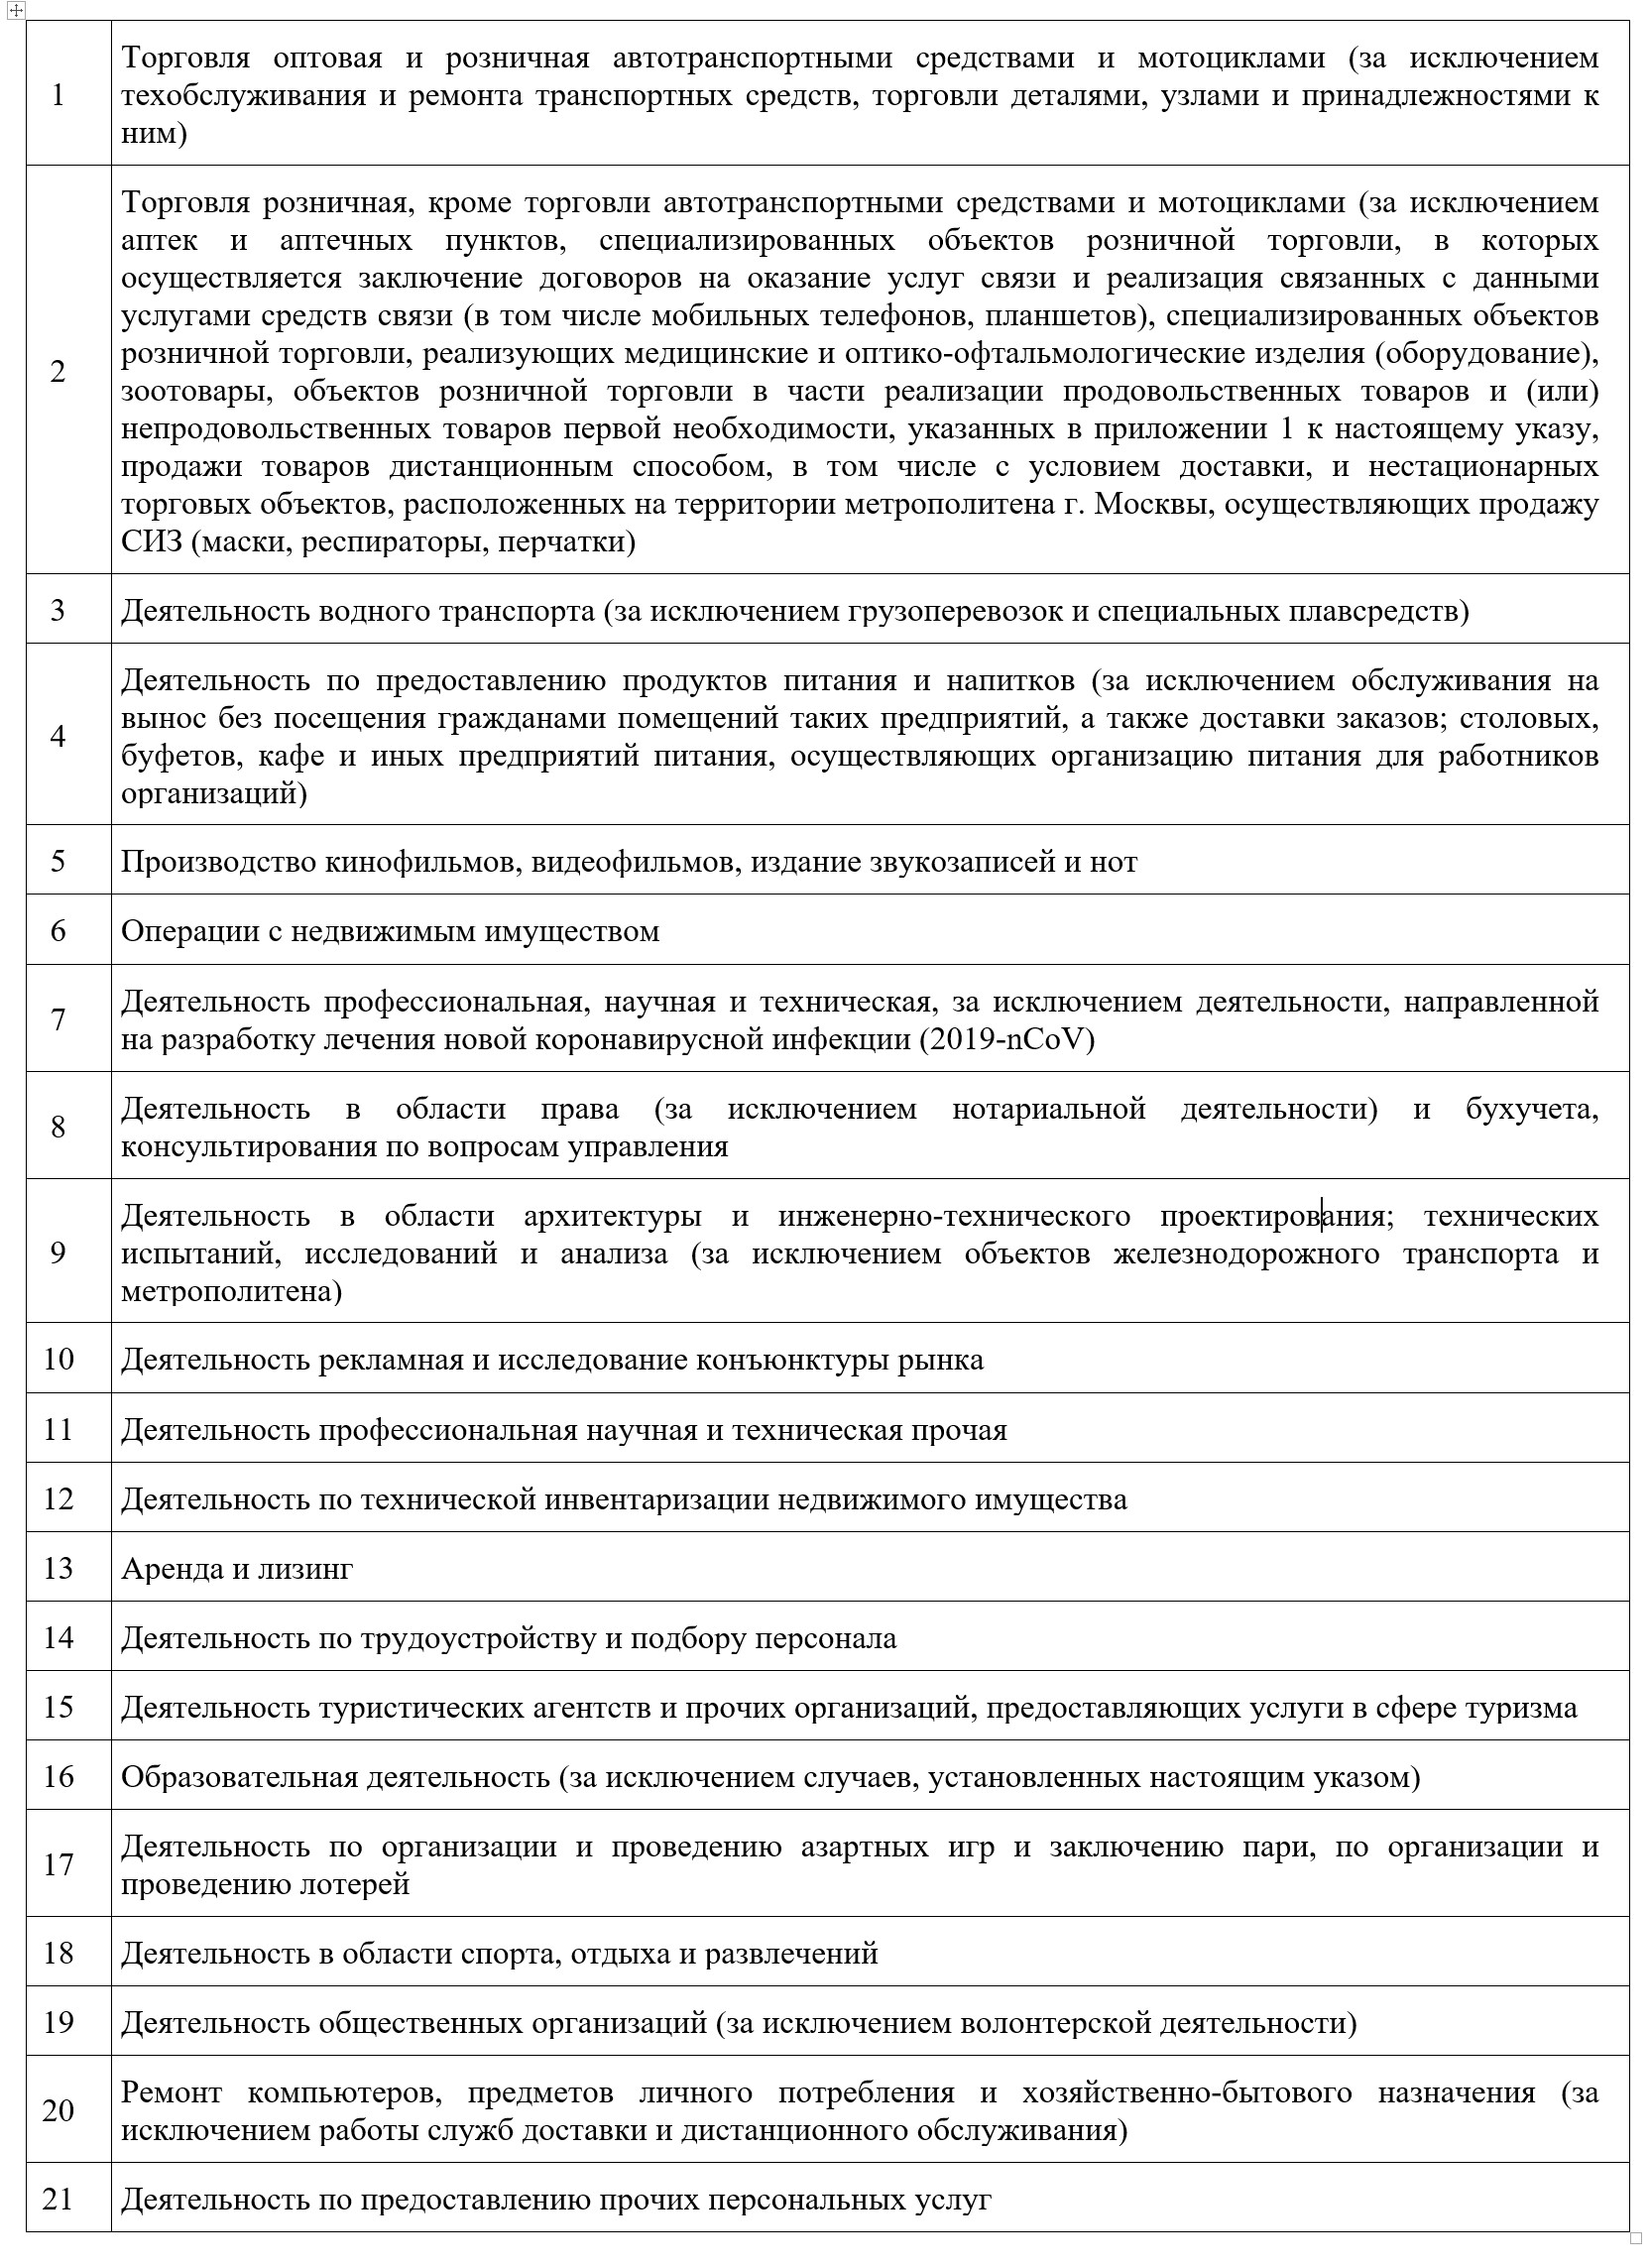 Работа предприятий в Москве с 12 мая: новые обязанности работодателей